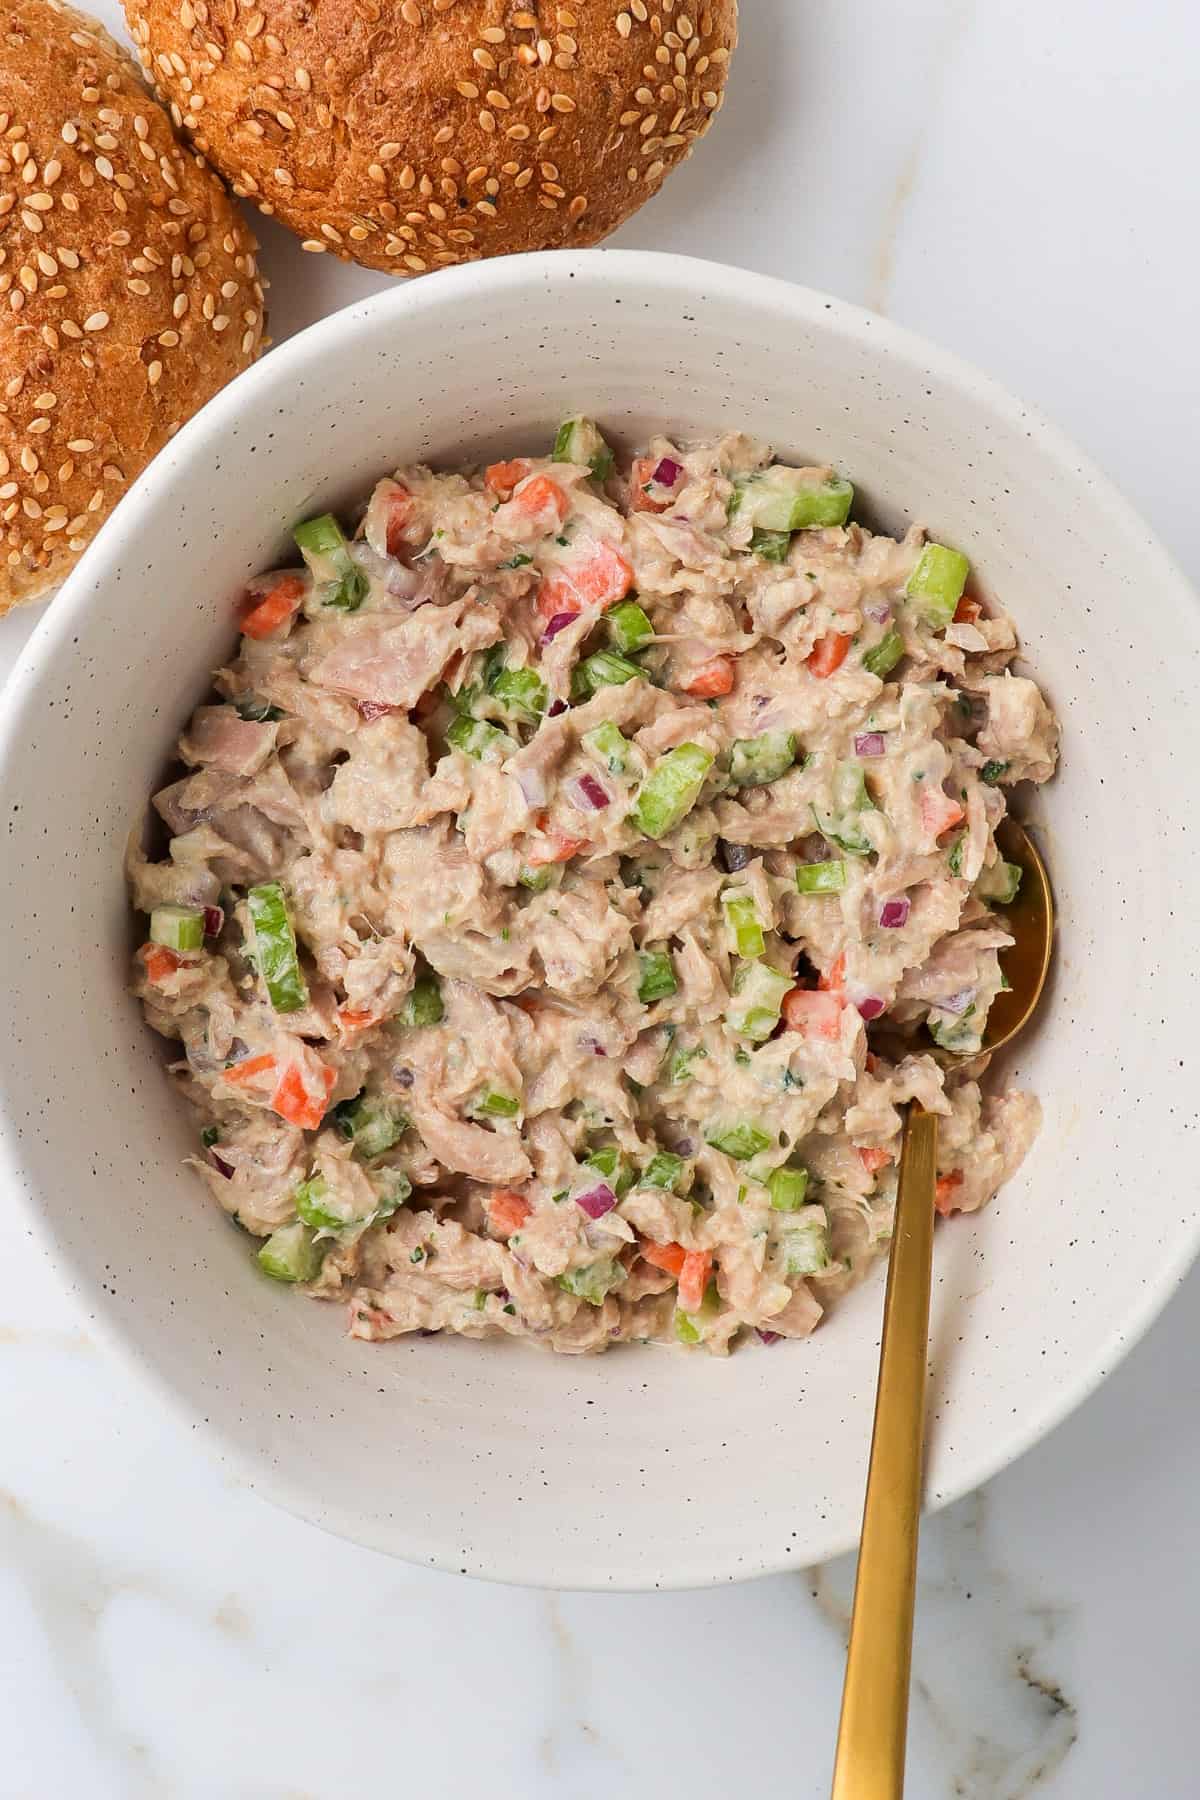 Tuna salad in mixing bowl.